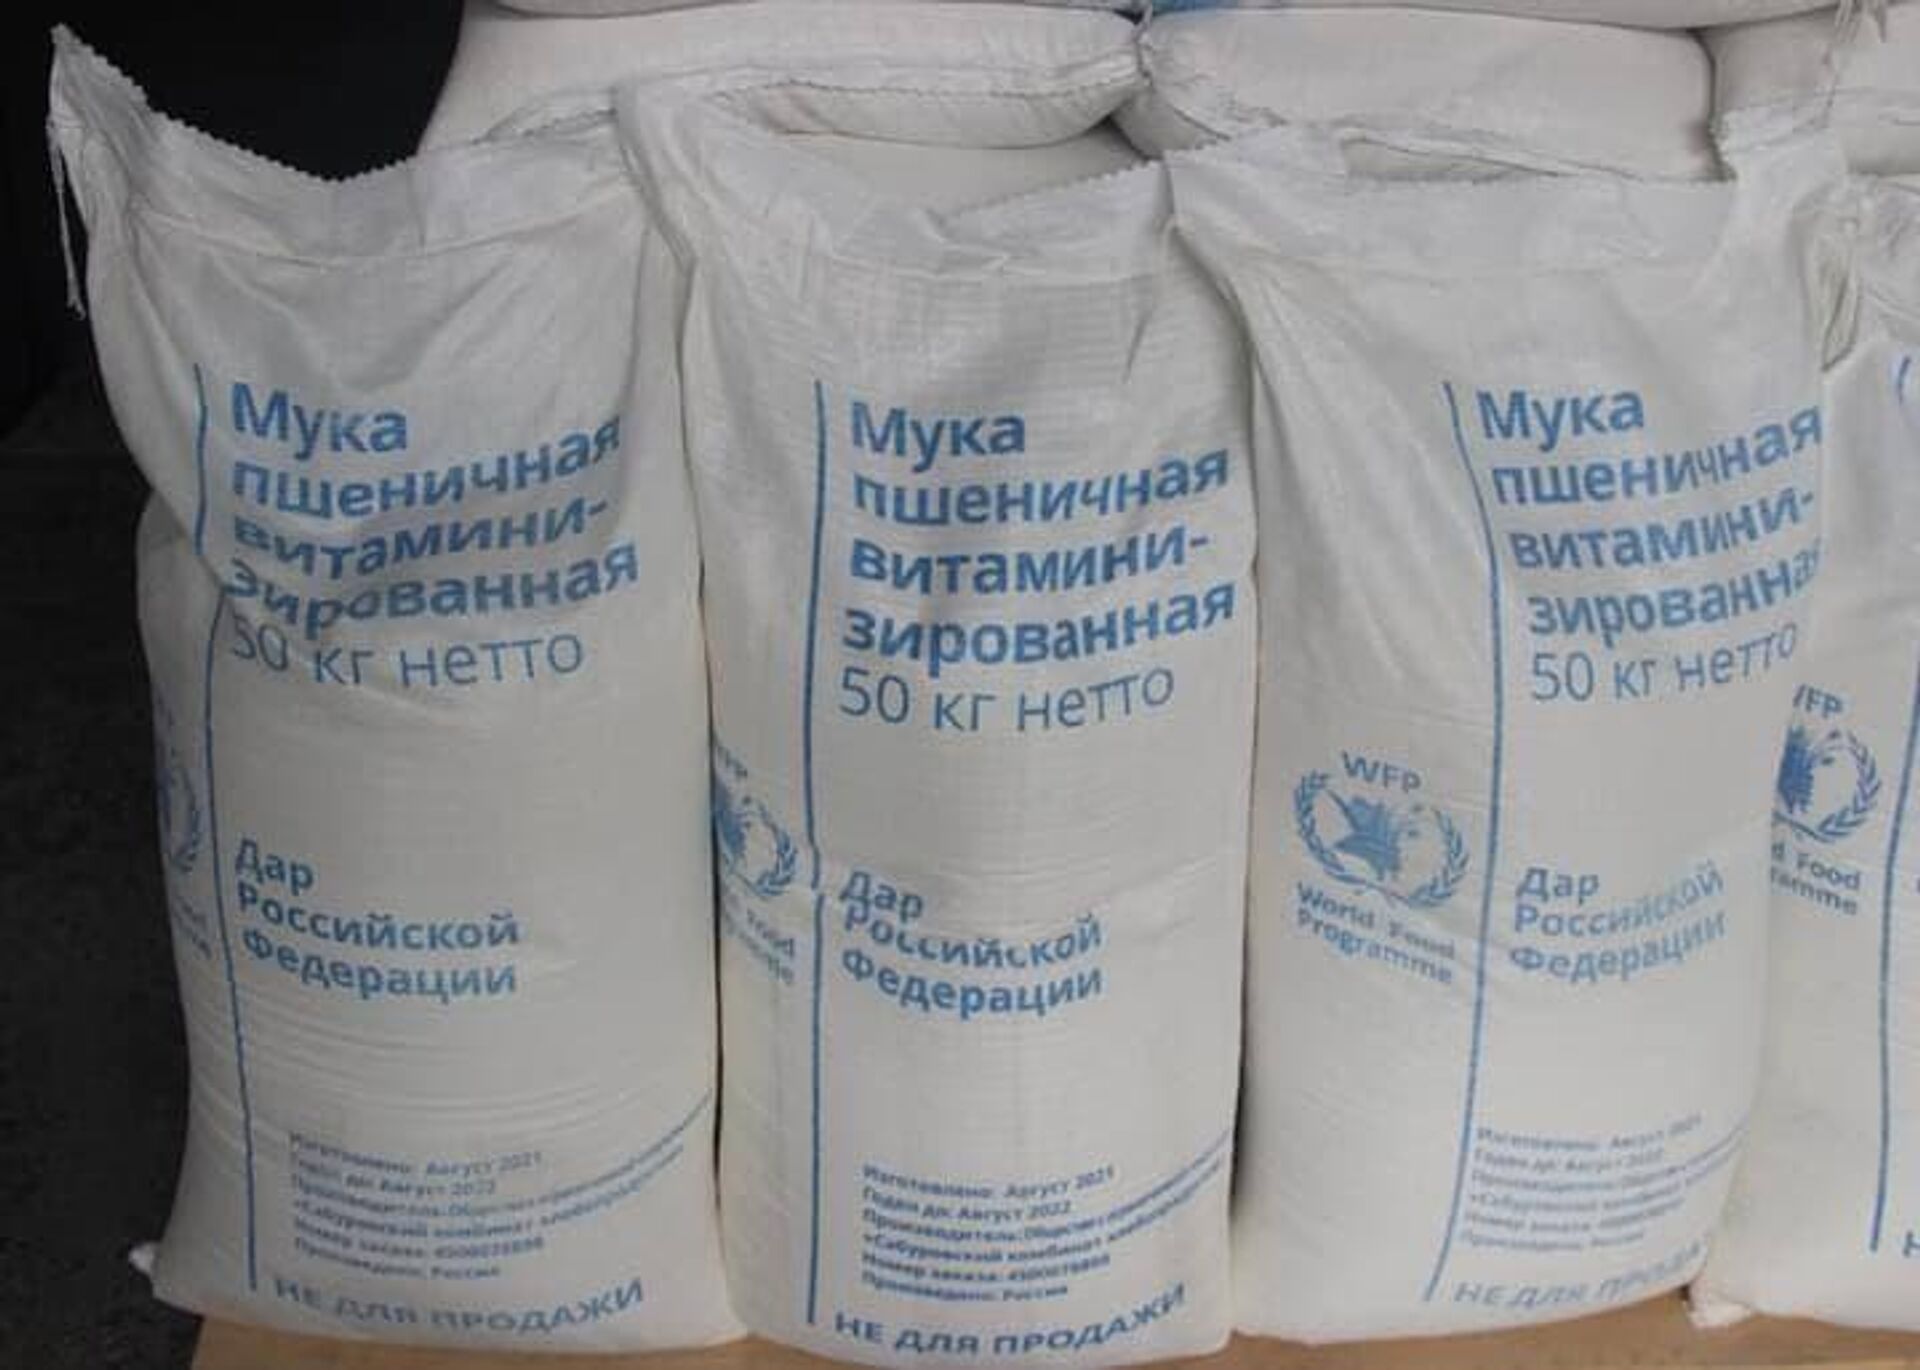 Посольство России и Всемирная продовольственная программа (ВПП ООН) провели церемонию передачи Правительству Таджикистана 1485 тонн обогащенной пшеничной муки и 61 тонны растительного масла - Sputnik Тоҷикистон, 1920, 26.10.2021